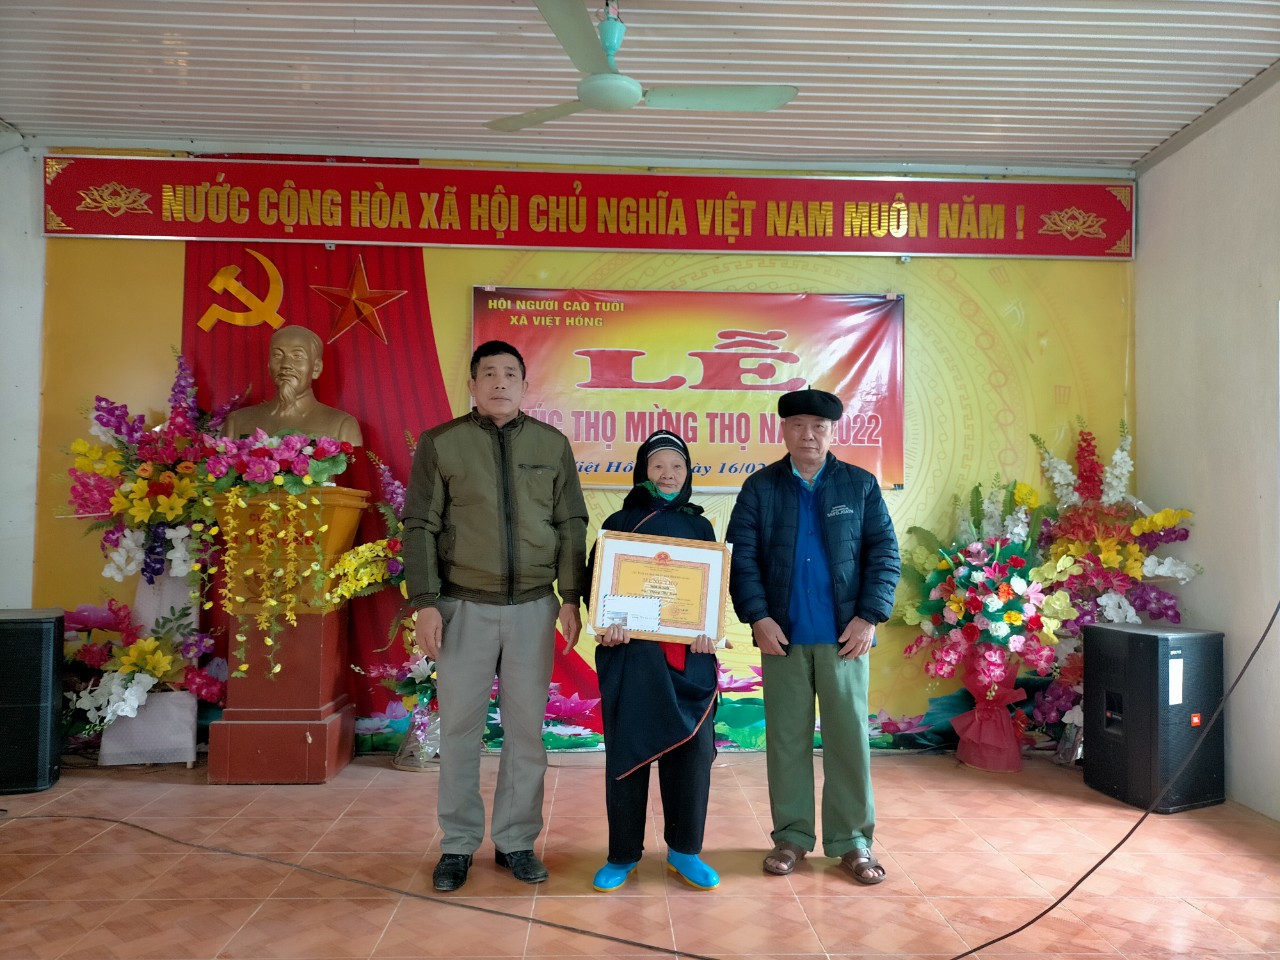 Lễ Chúc thọ, mừng thọ người cao tuổi xã Việt Hồng năm 2022